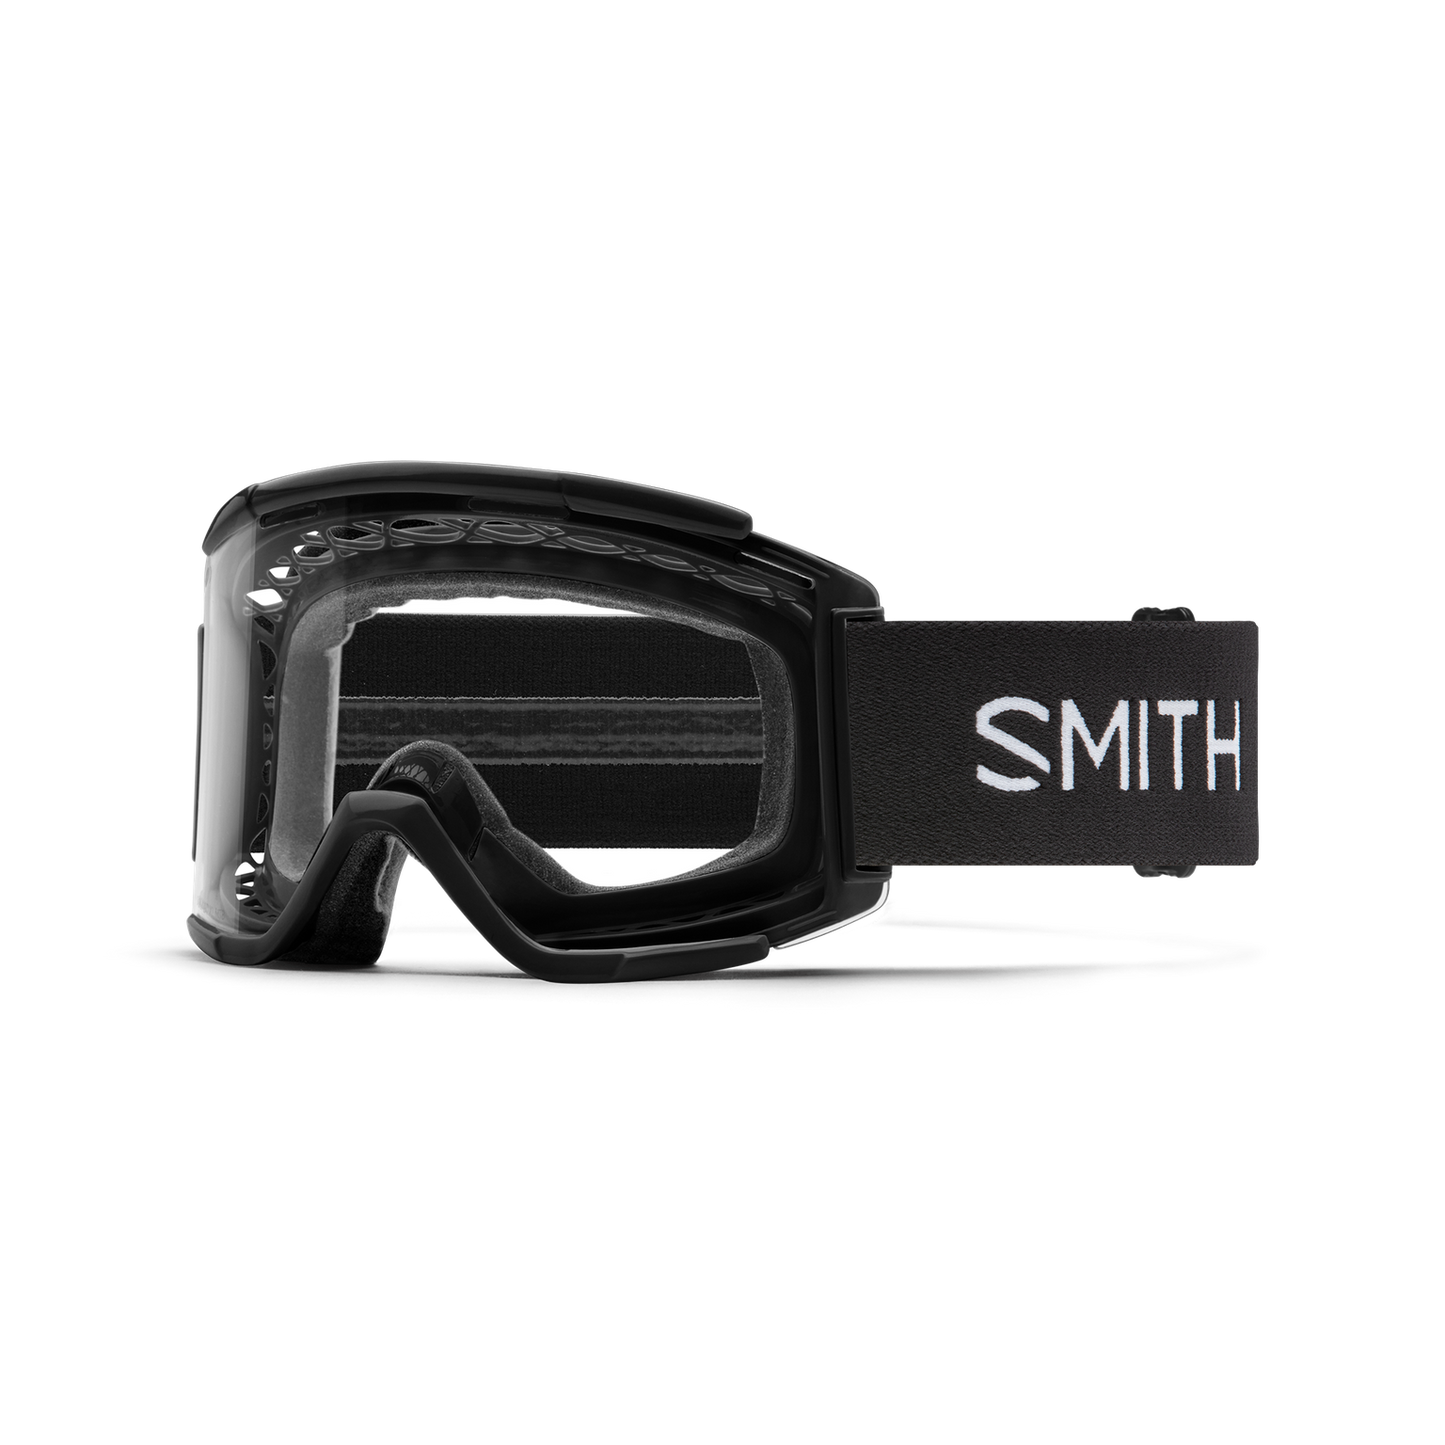 Smith Squad XL Goggles